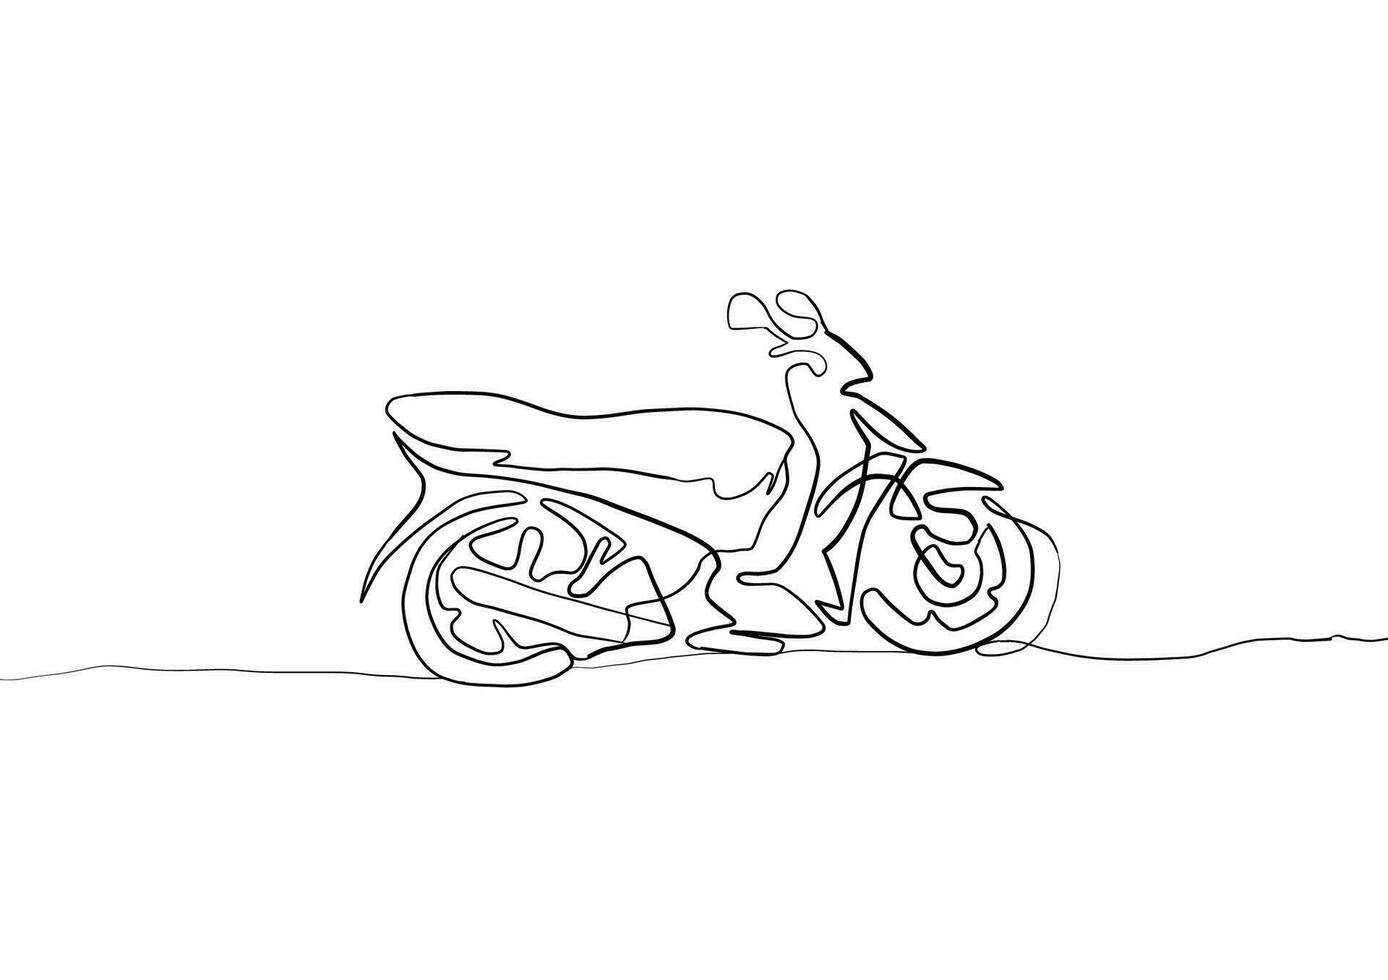 kontinuierlich Linie Zeichnung von Motorrad. Linie , Motorrad, kontinuierlich Linie ,Zeichnung, kontinuierlich ,eins Linie, Zeichnung . vektor